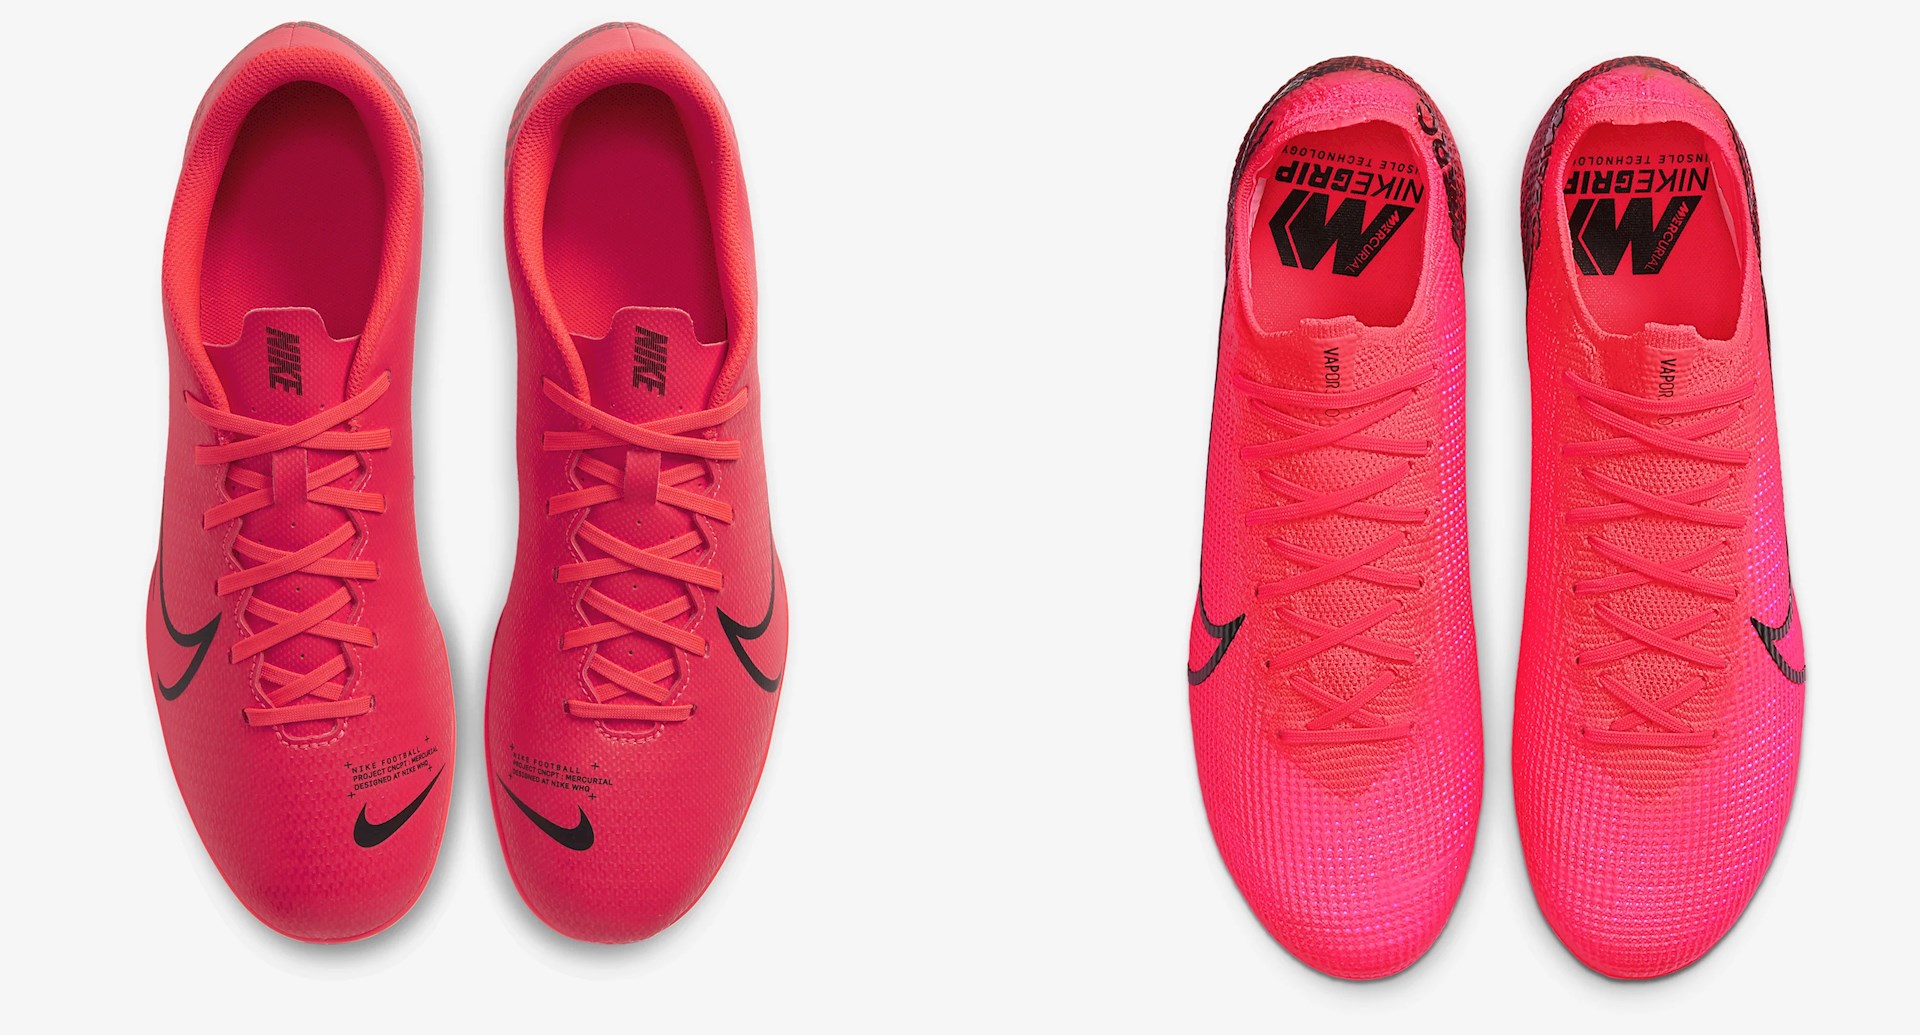 Goedkope Nike Mercurial voetbalschoenen - Voetbal-schoenen.eu